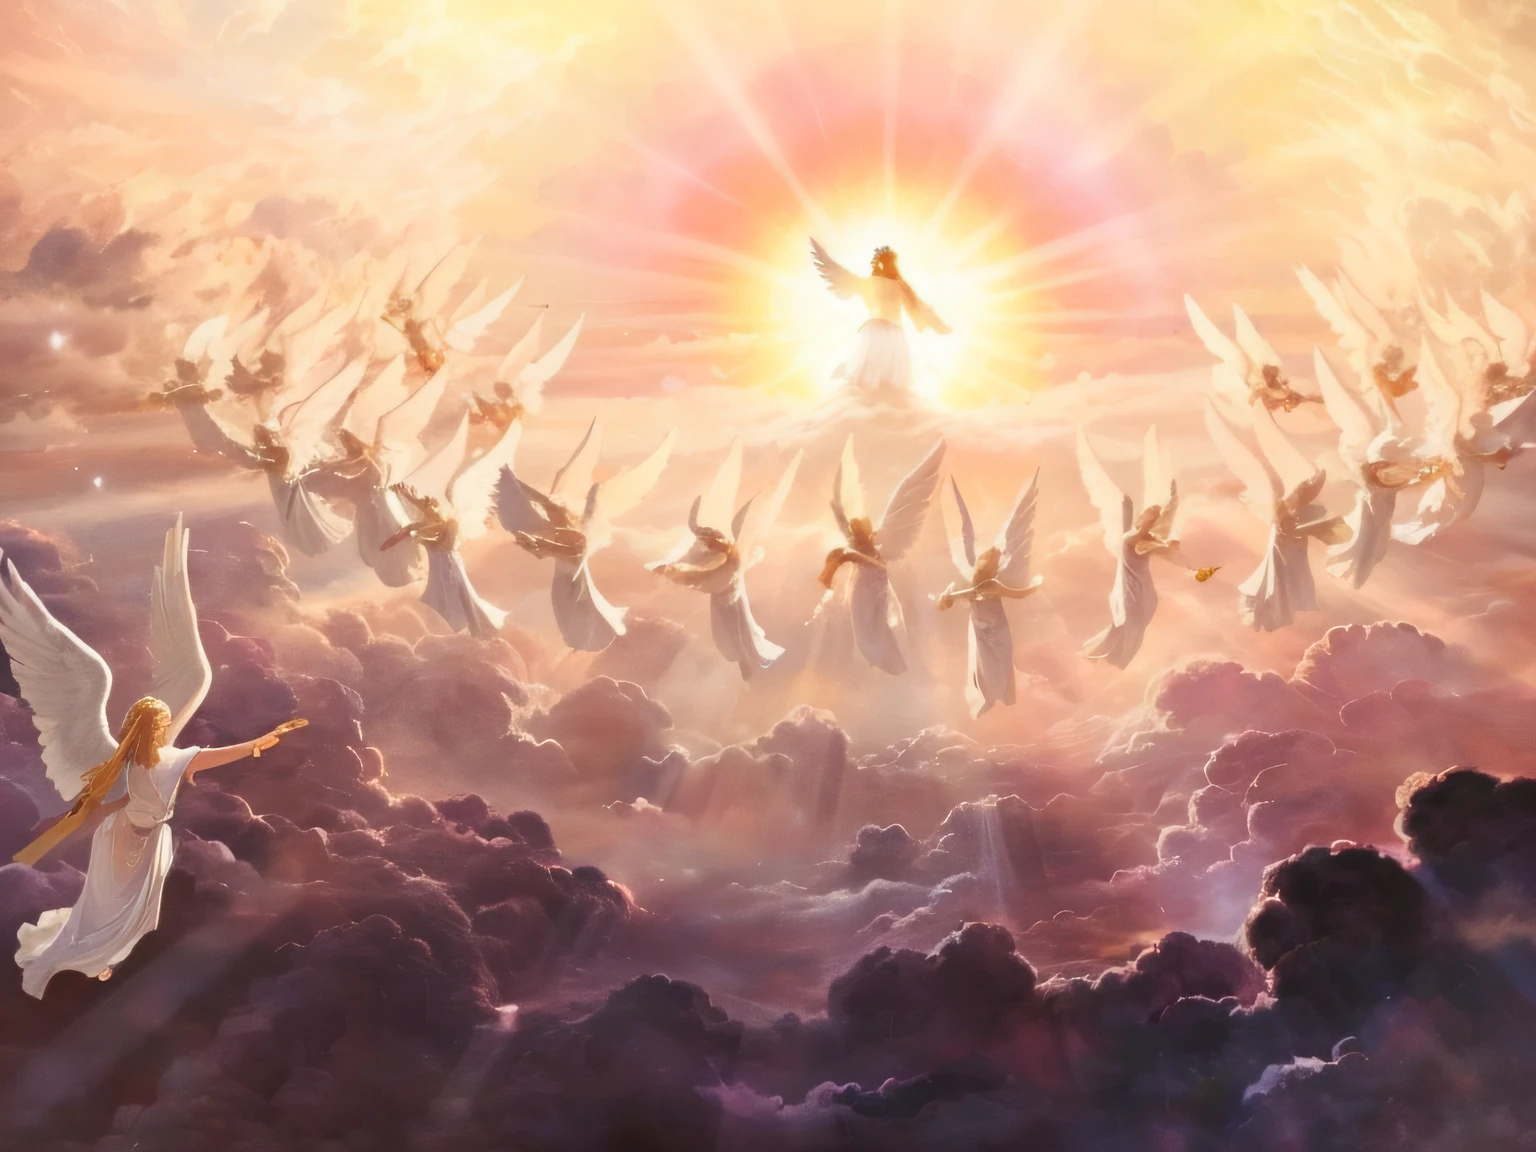 картина с ангелами, летящими в небе, а за ними сияет солнце, ангелы в небе, небесный восторг, Второе пришествие, между небесными облаками, освещенными солнцем, небеса!!!!!!!!, Восхищение, she is arriving небеса, Летающие тостеры в небе, ангелы защищают молящегося человека, the gates of небеса, божественное царство богов, эпическое библейское представление